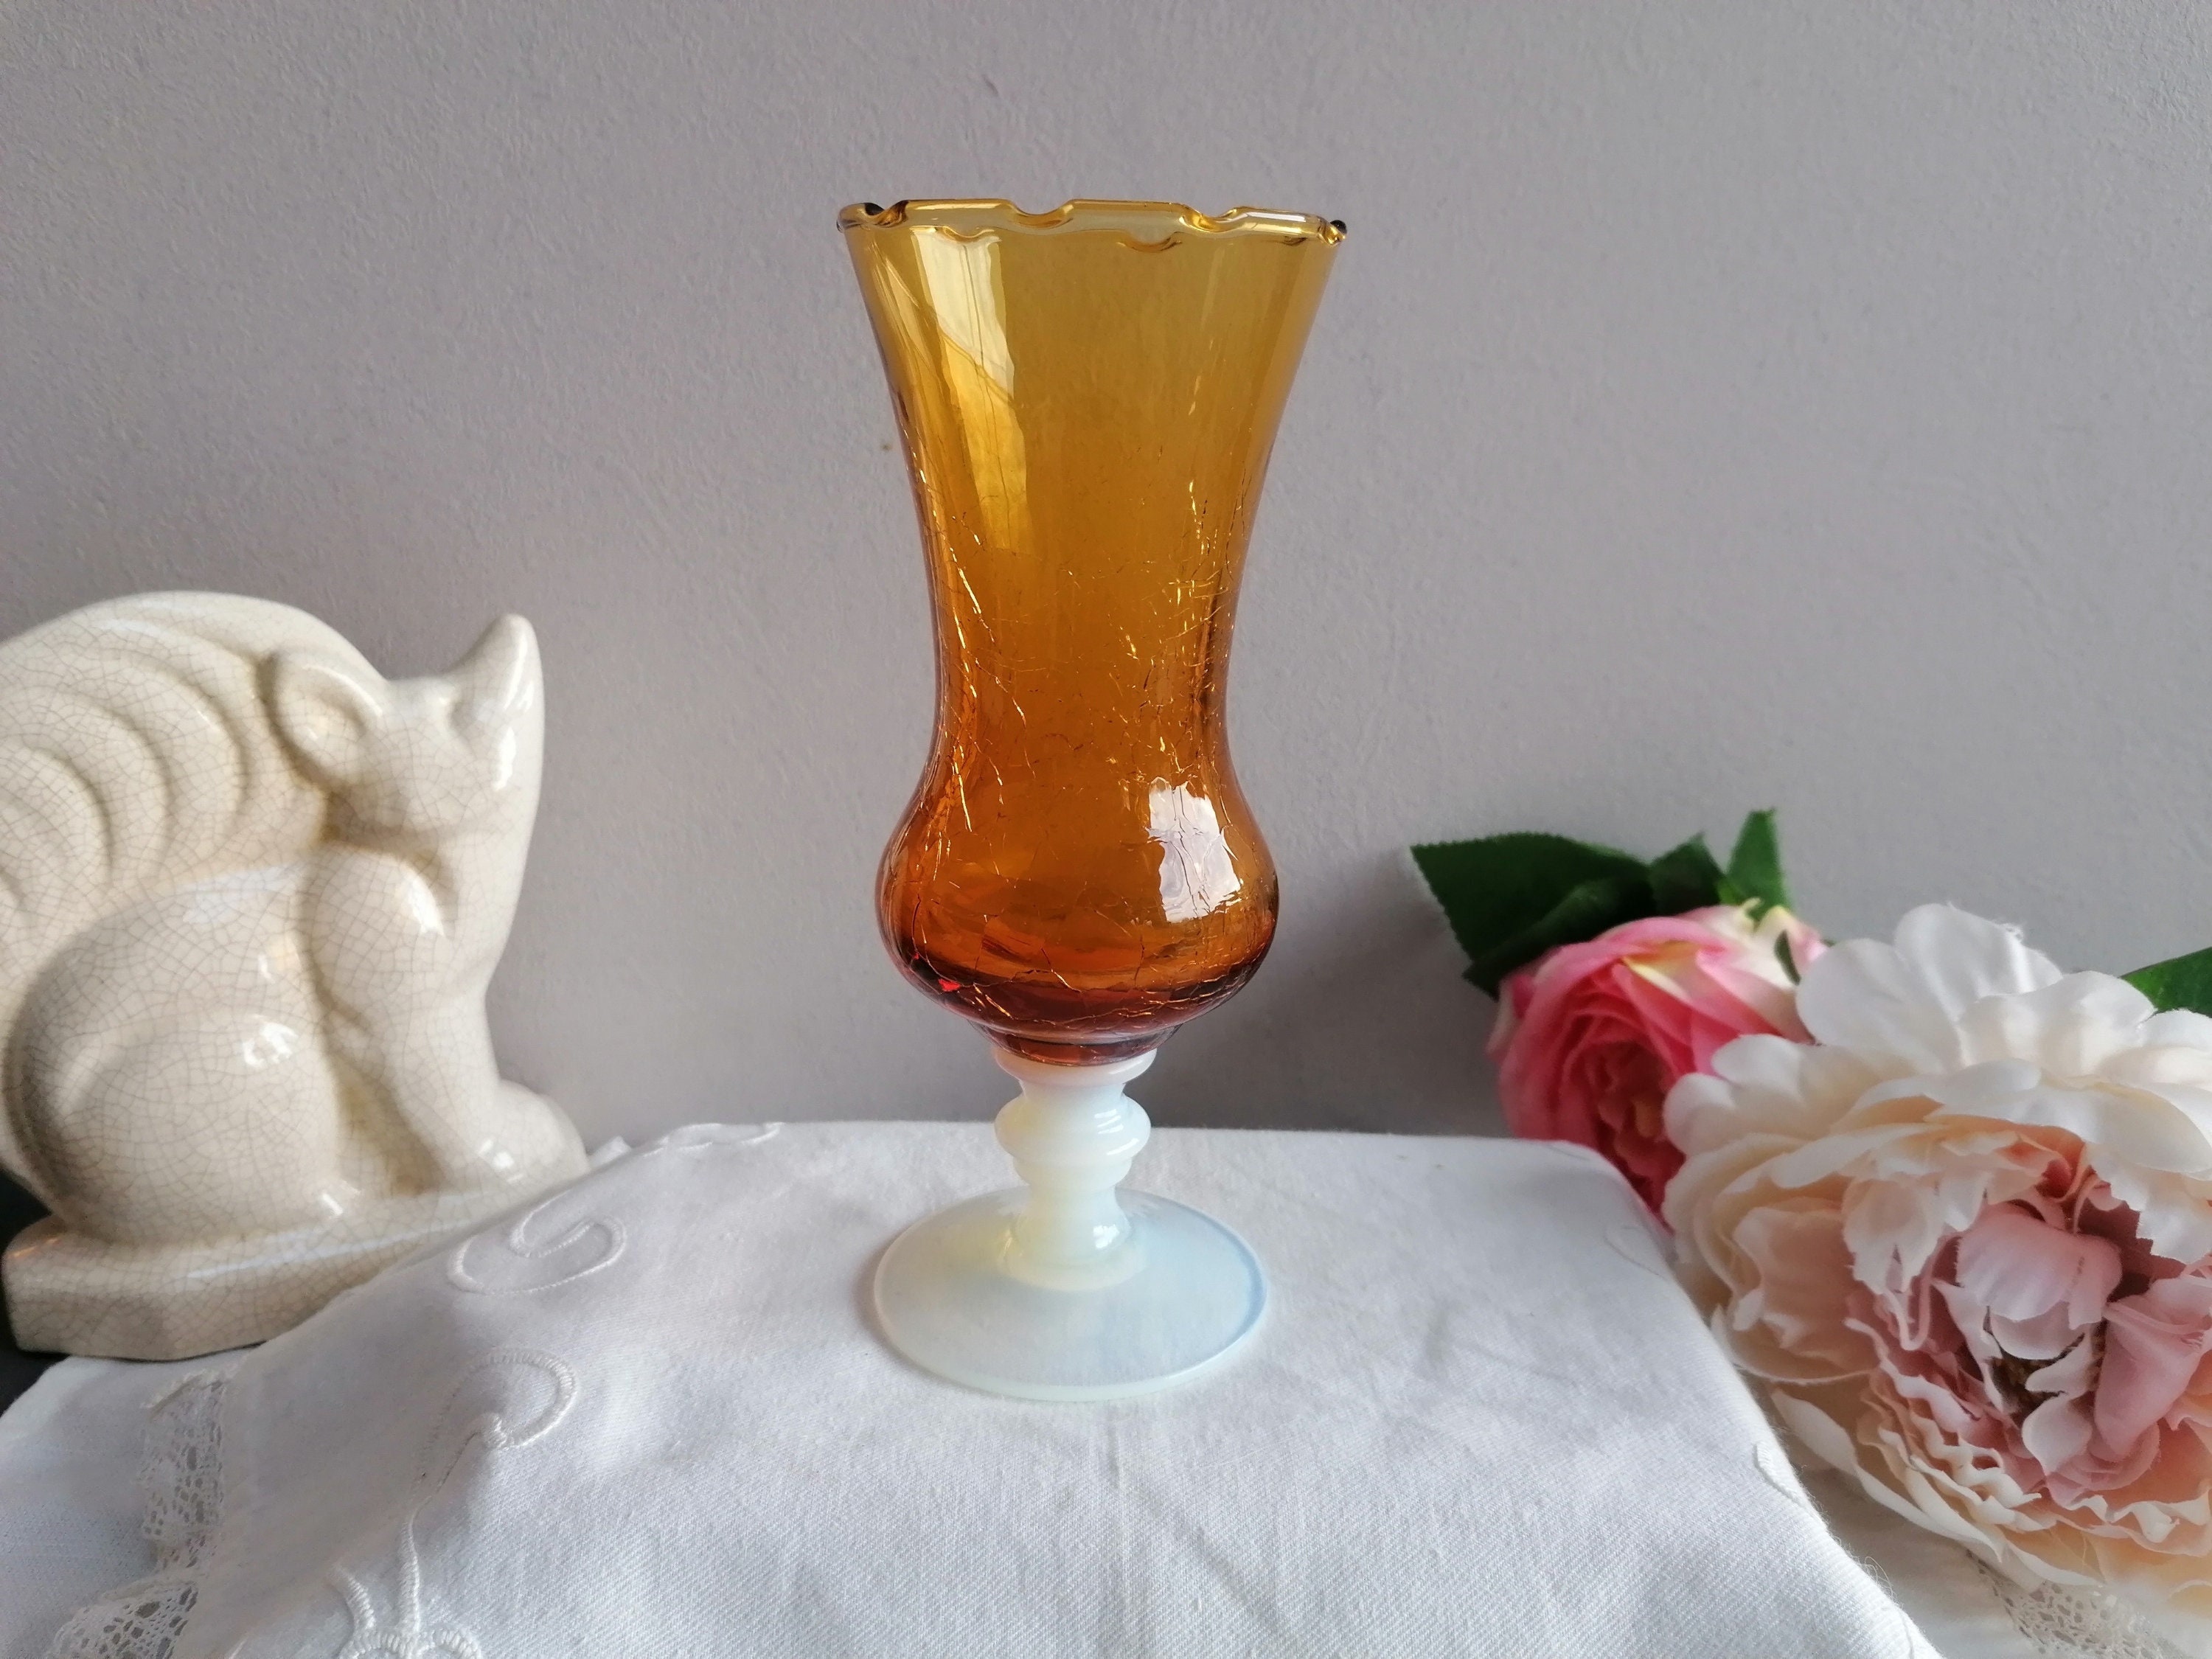 Superbe Petit Vase Ancien en Verre Craquelé Jaune et Pied Opaline. Vase Forme de à Pied, d'une Grand